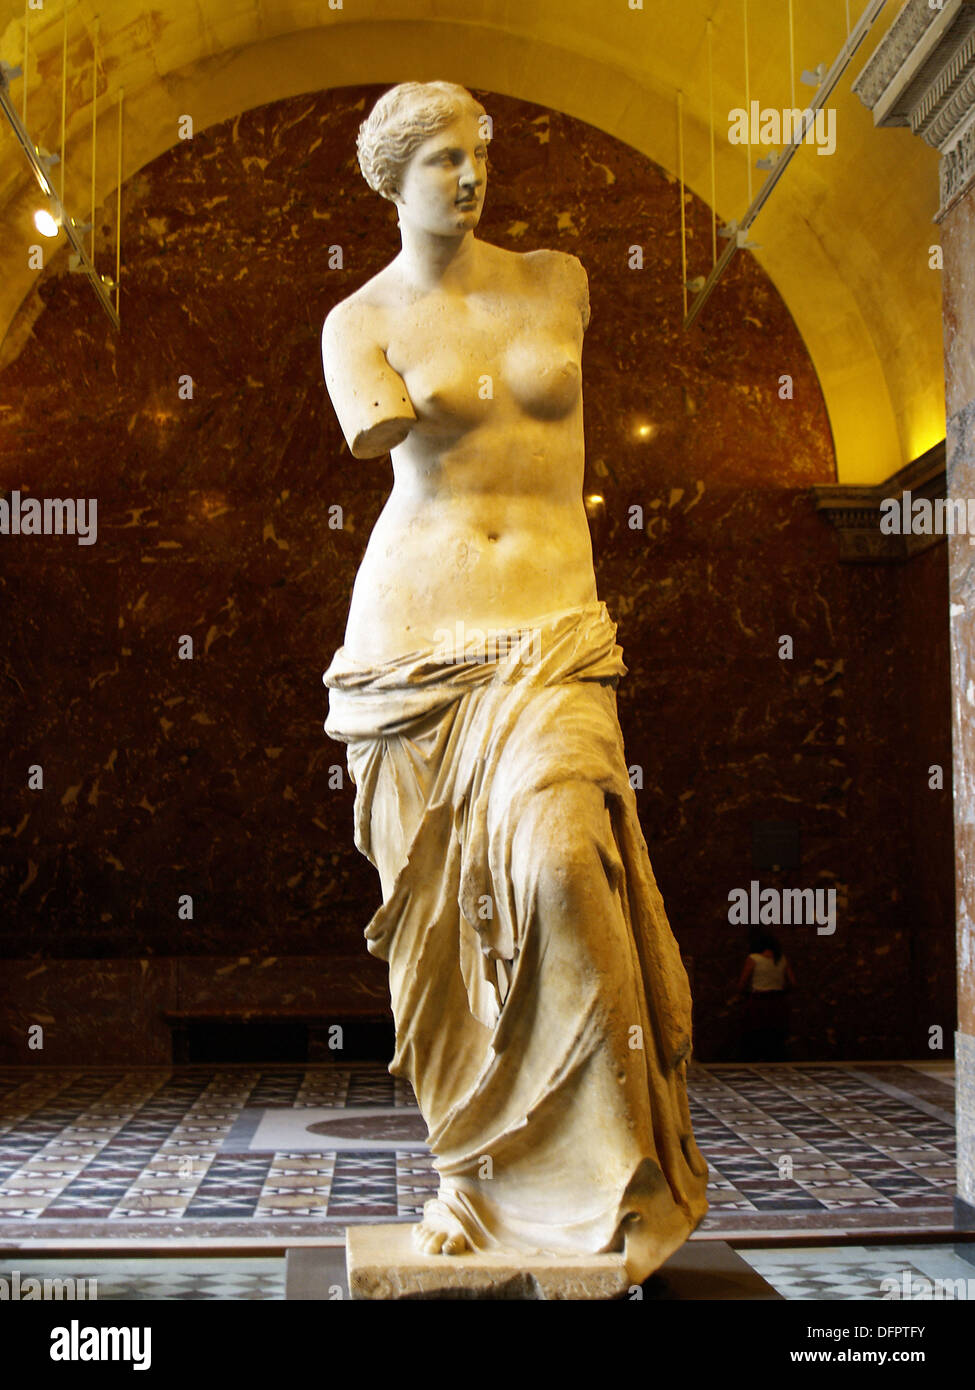 Venus de Milo statue at Louvre Museum, Paris. France Stock Photo - Alamy